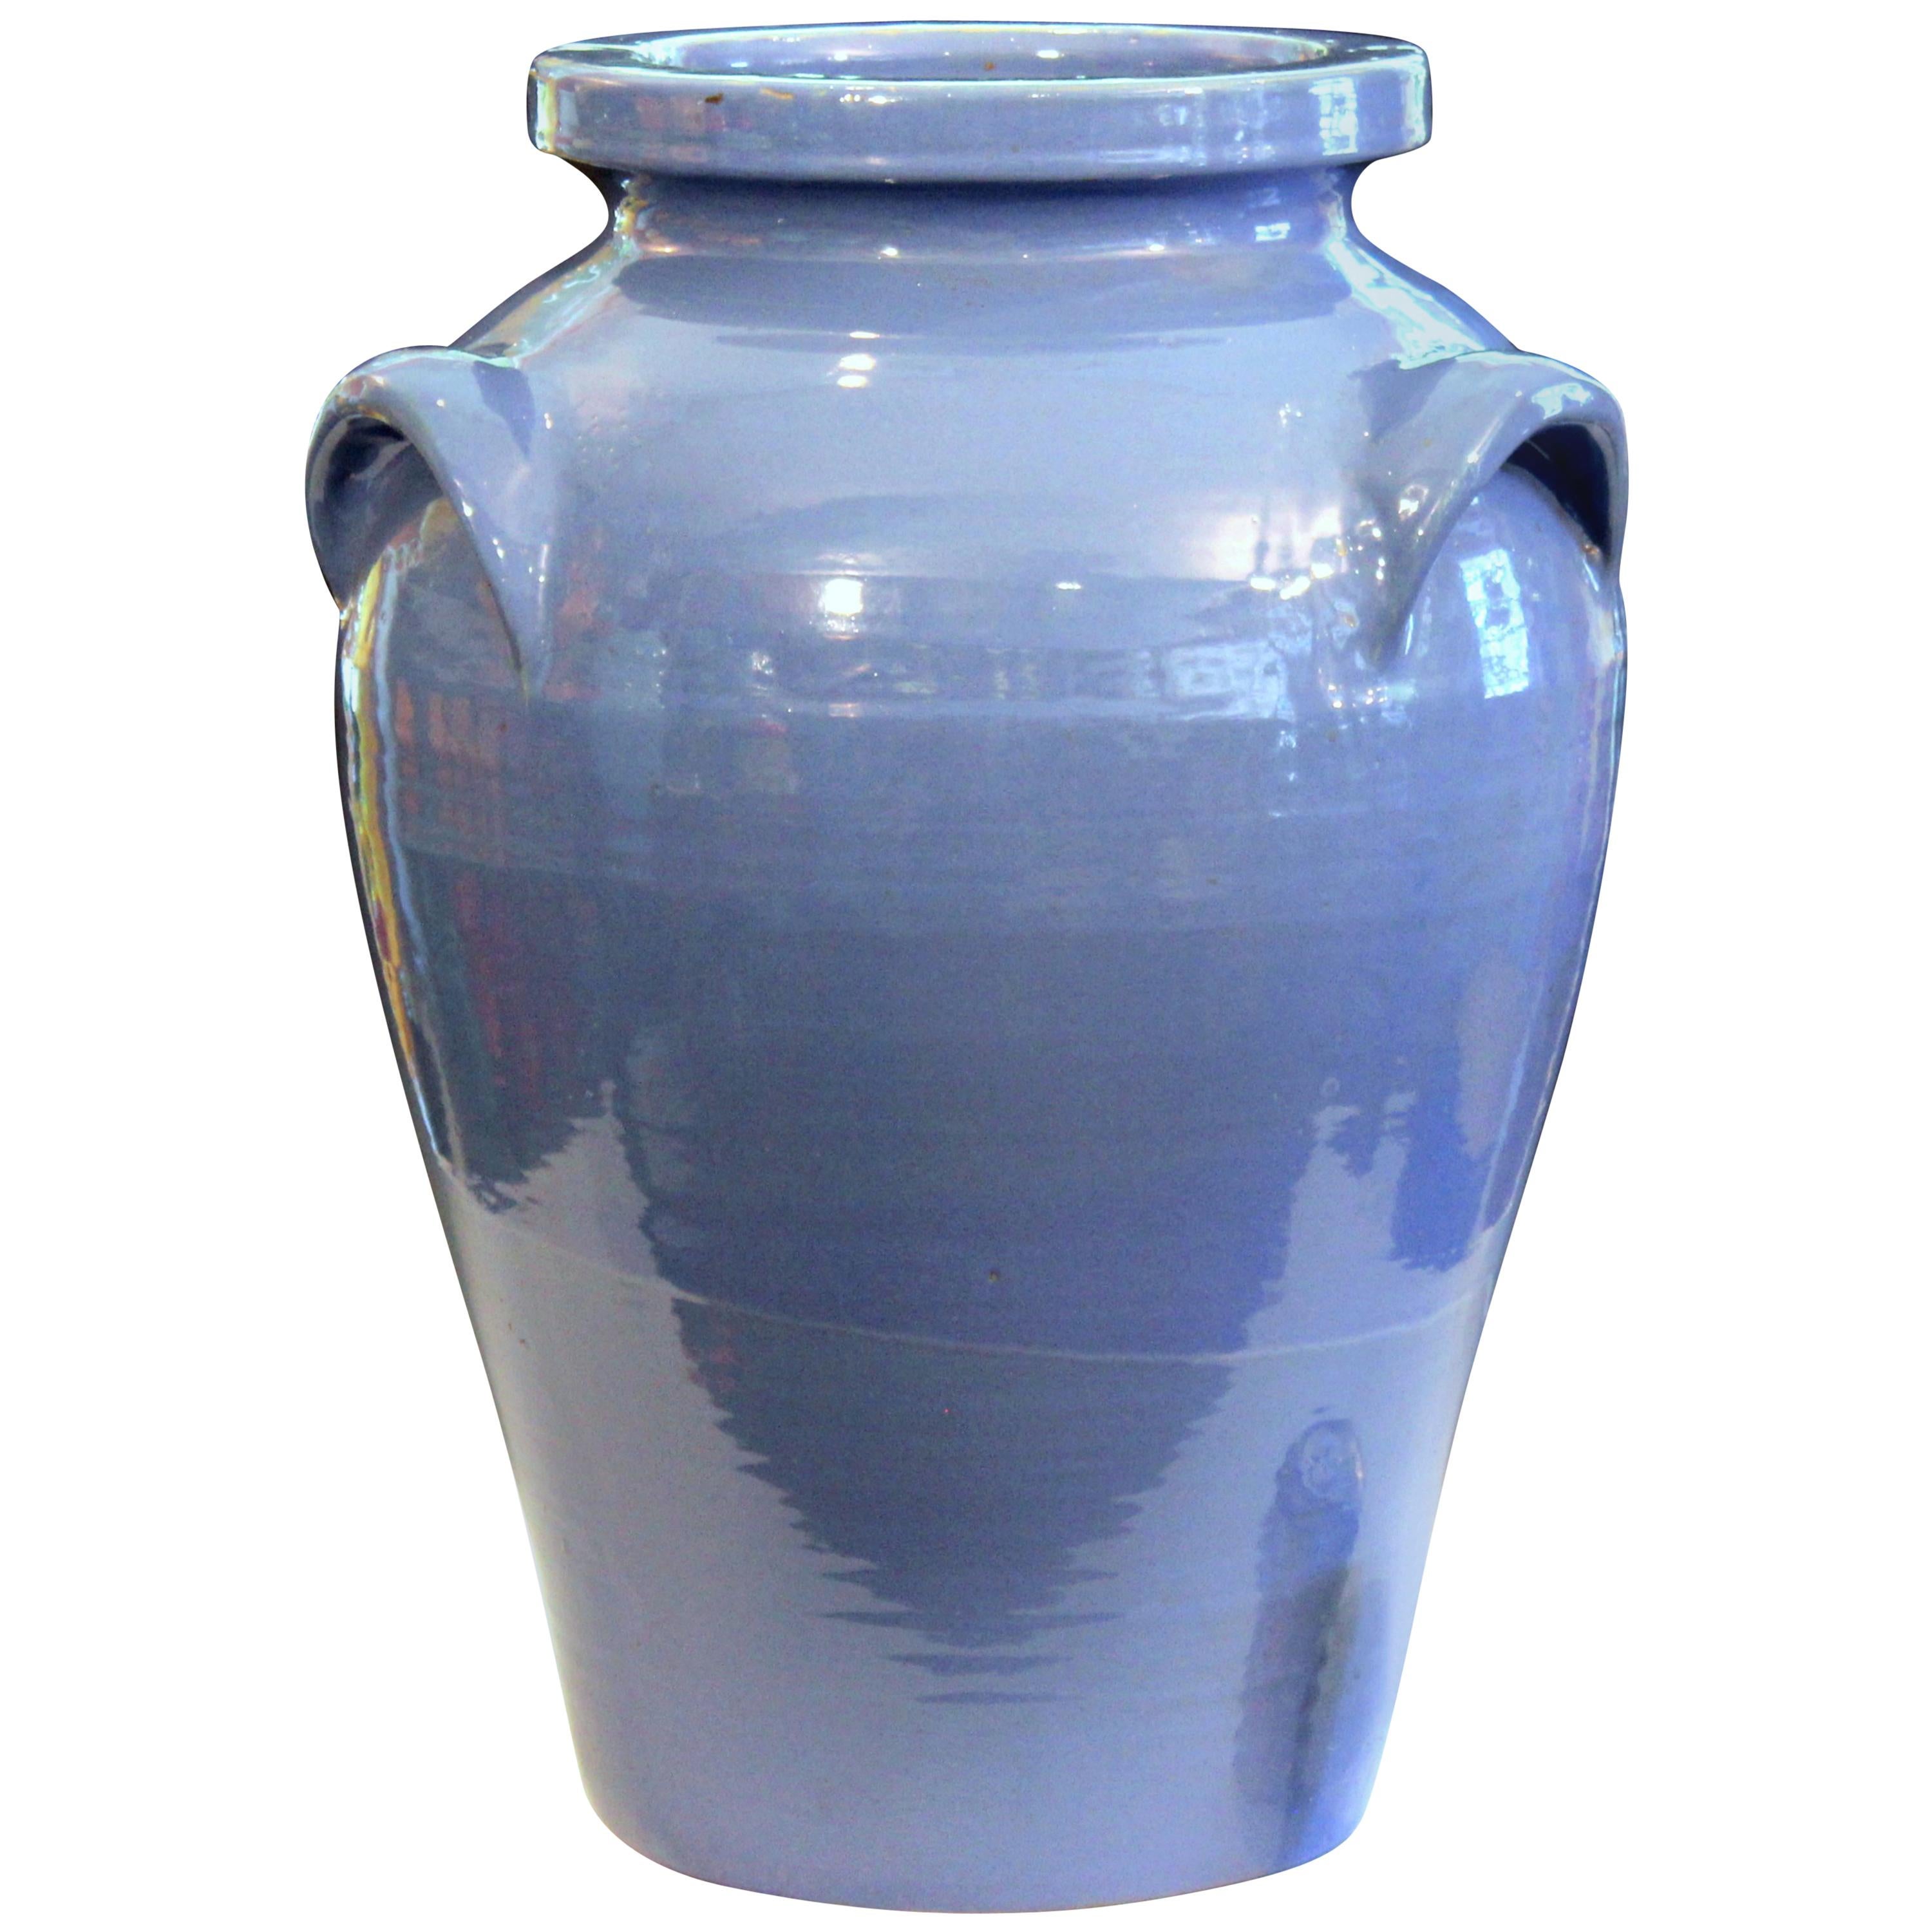 Große Pickrull Zanesville Norwalk Pot Shop Urne Keramik Arts & Crafts Bodenvase